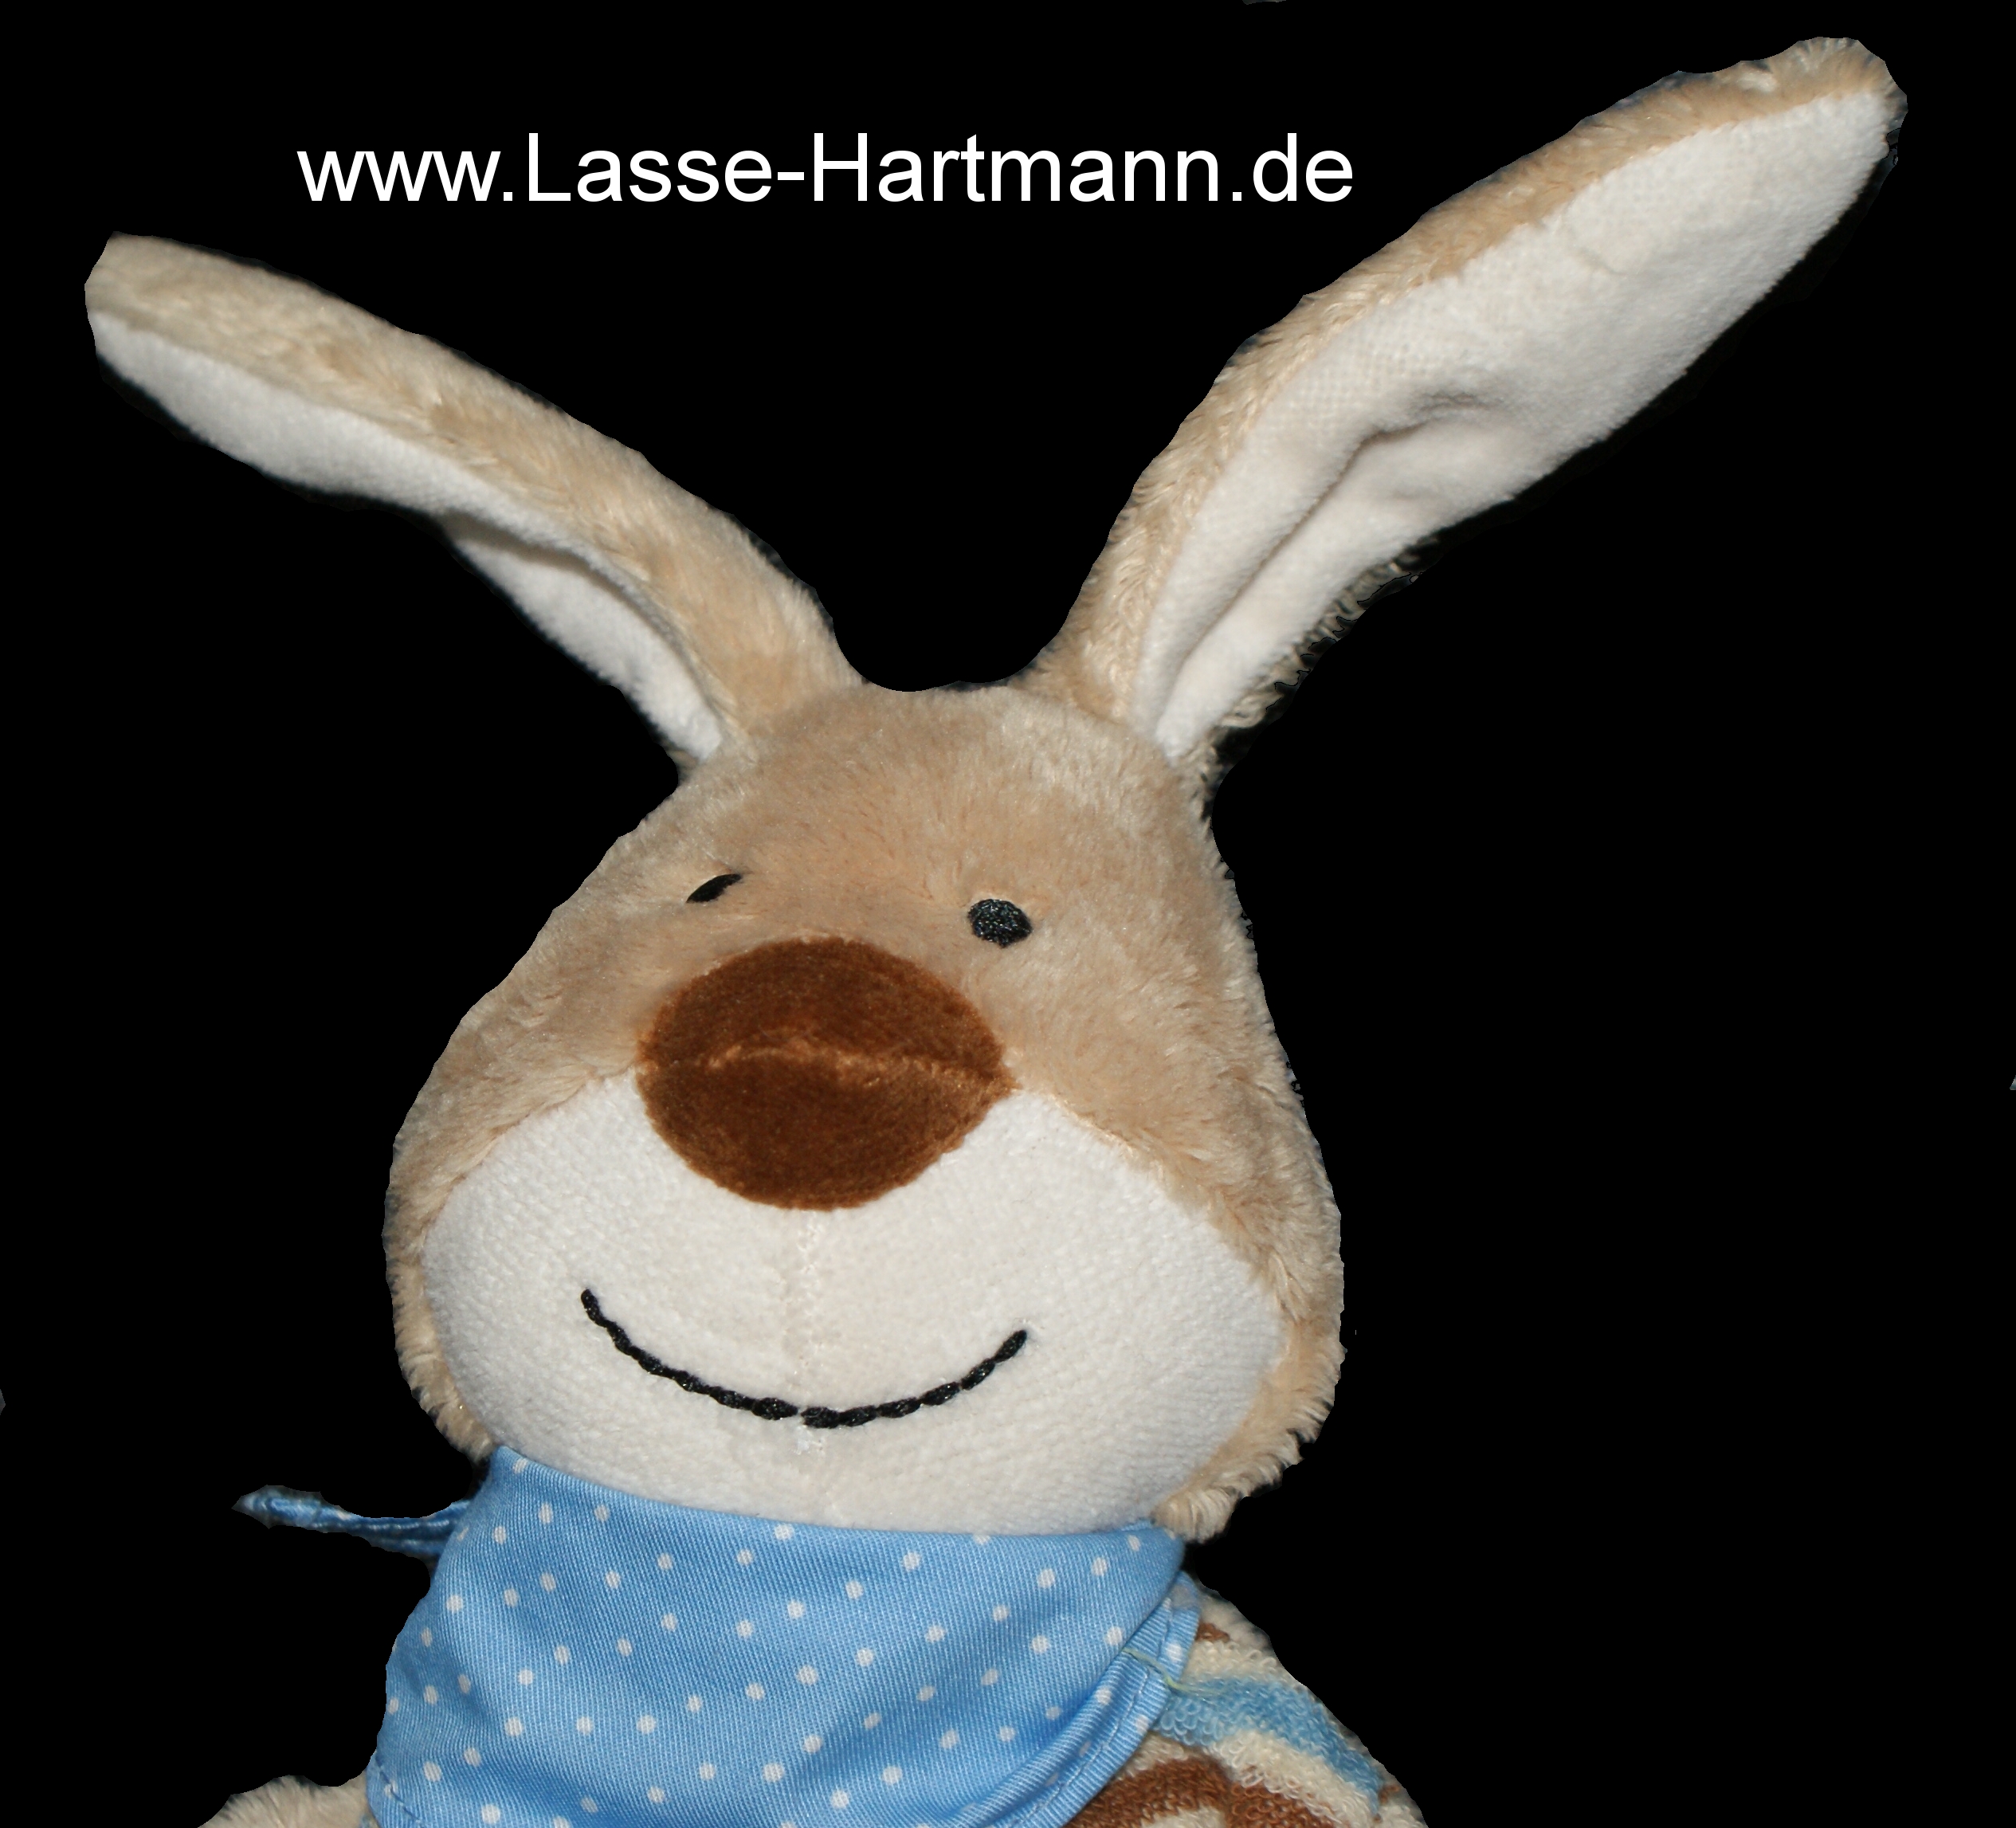 www.lasse-hartmann.de